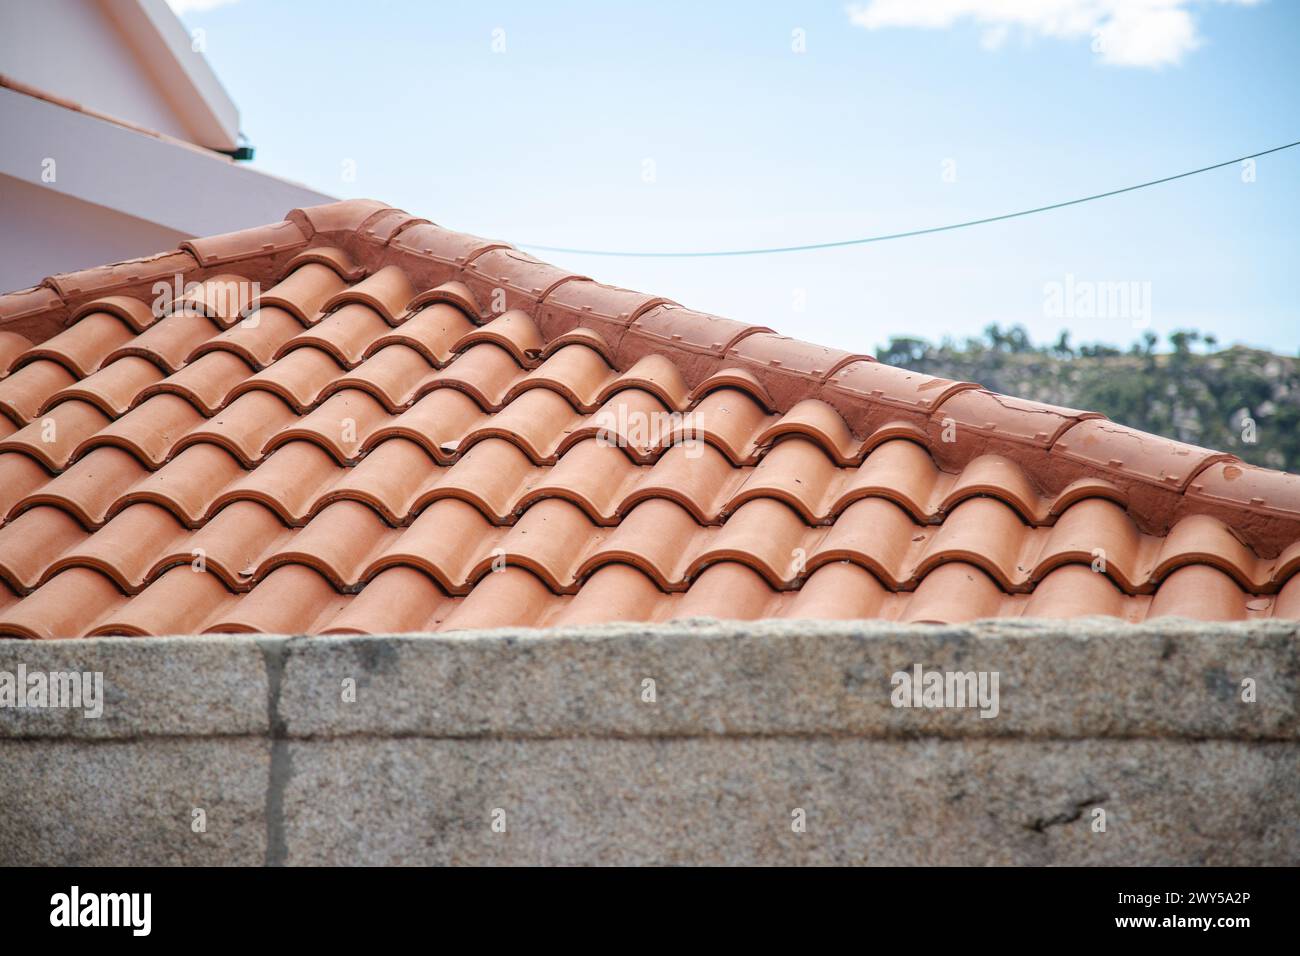 Piastrelle arancioni allineate su un tetto con dettagli in pietra. Copia spazio Foto Stock